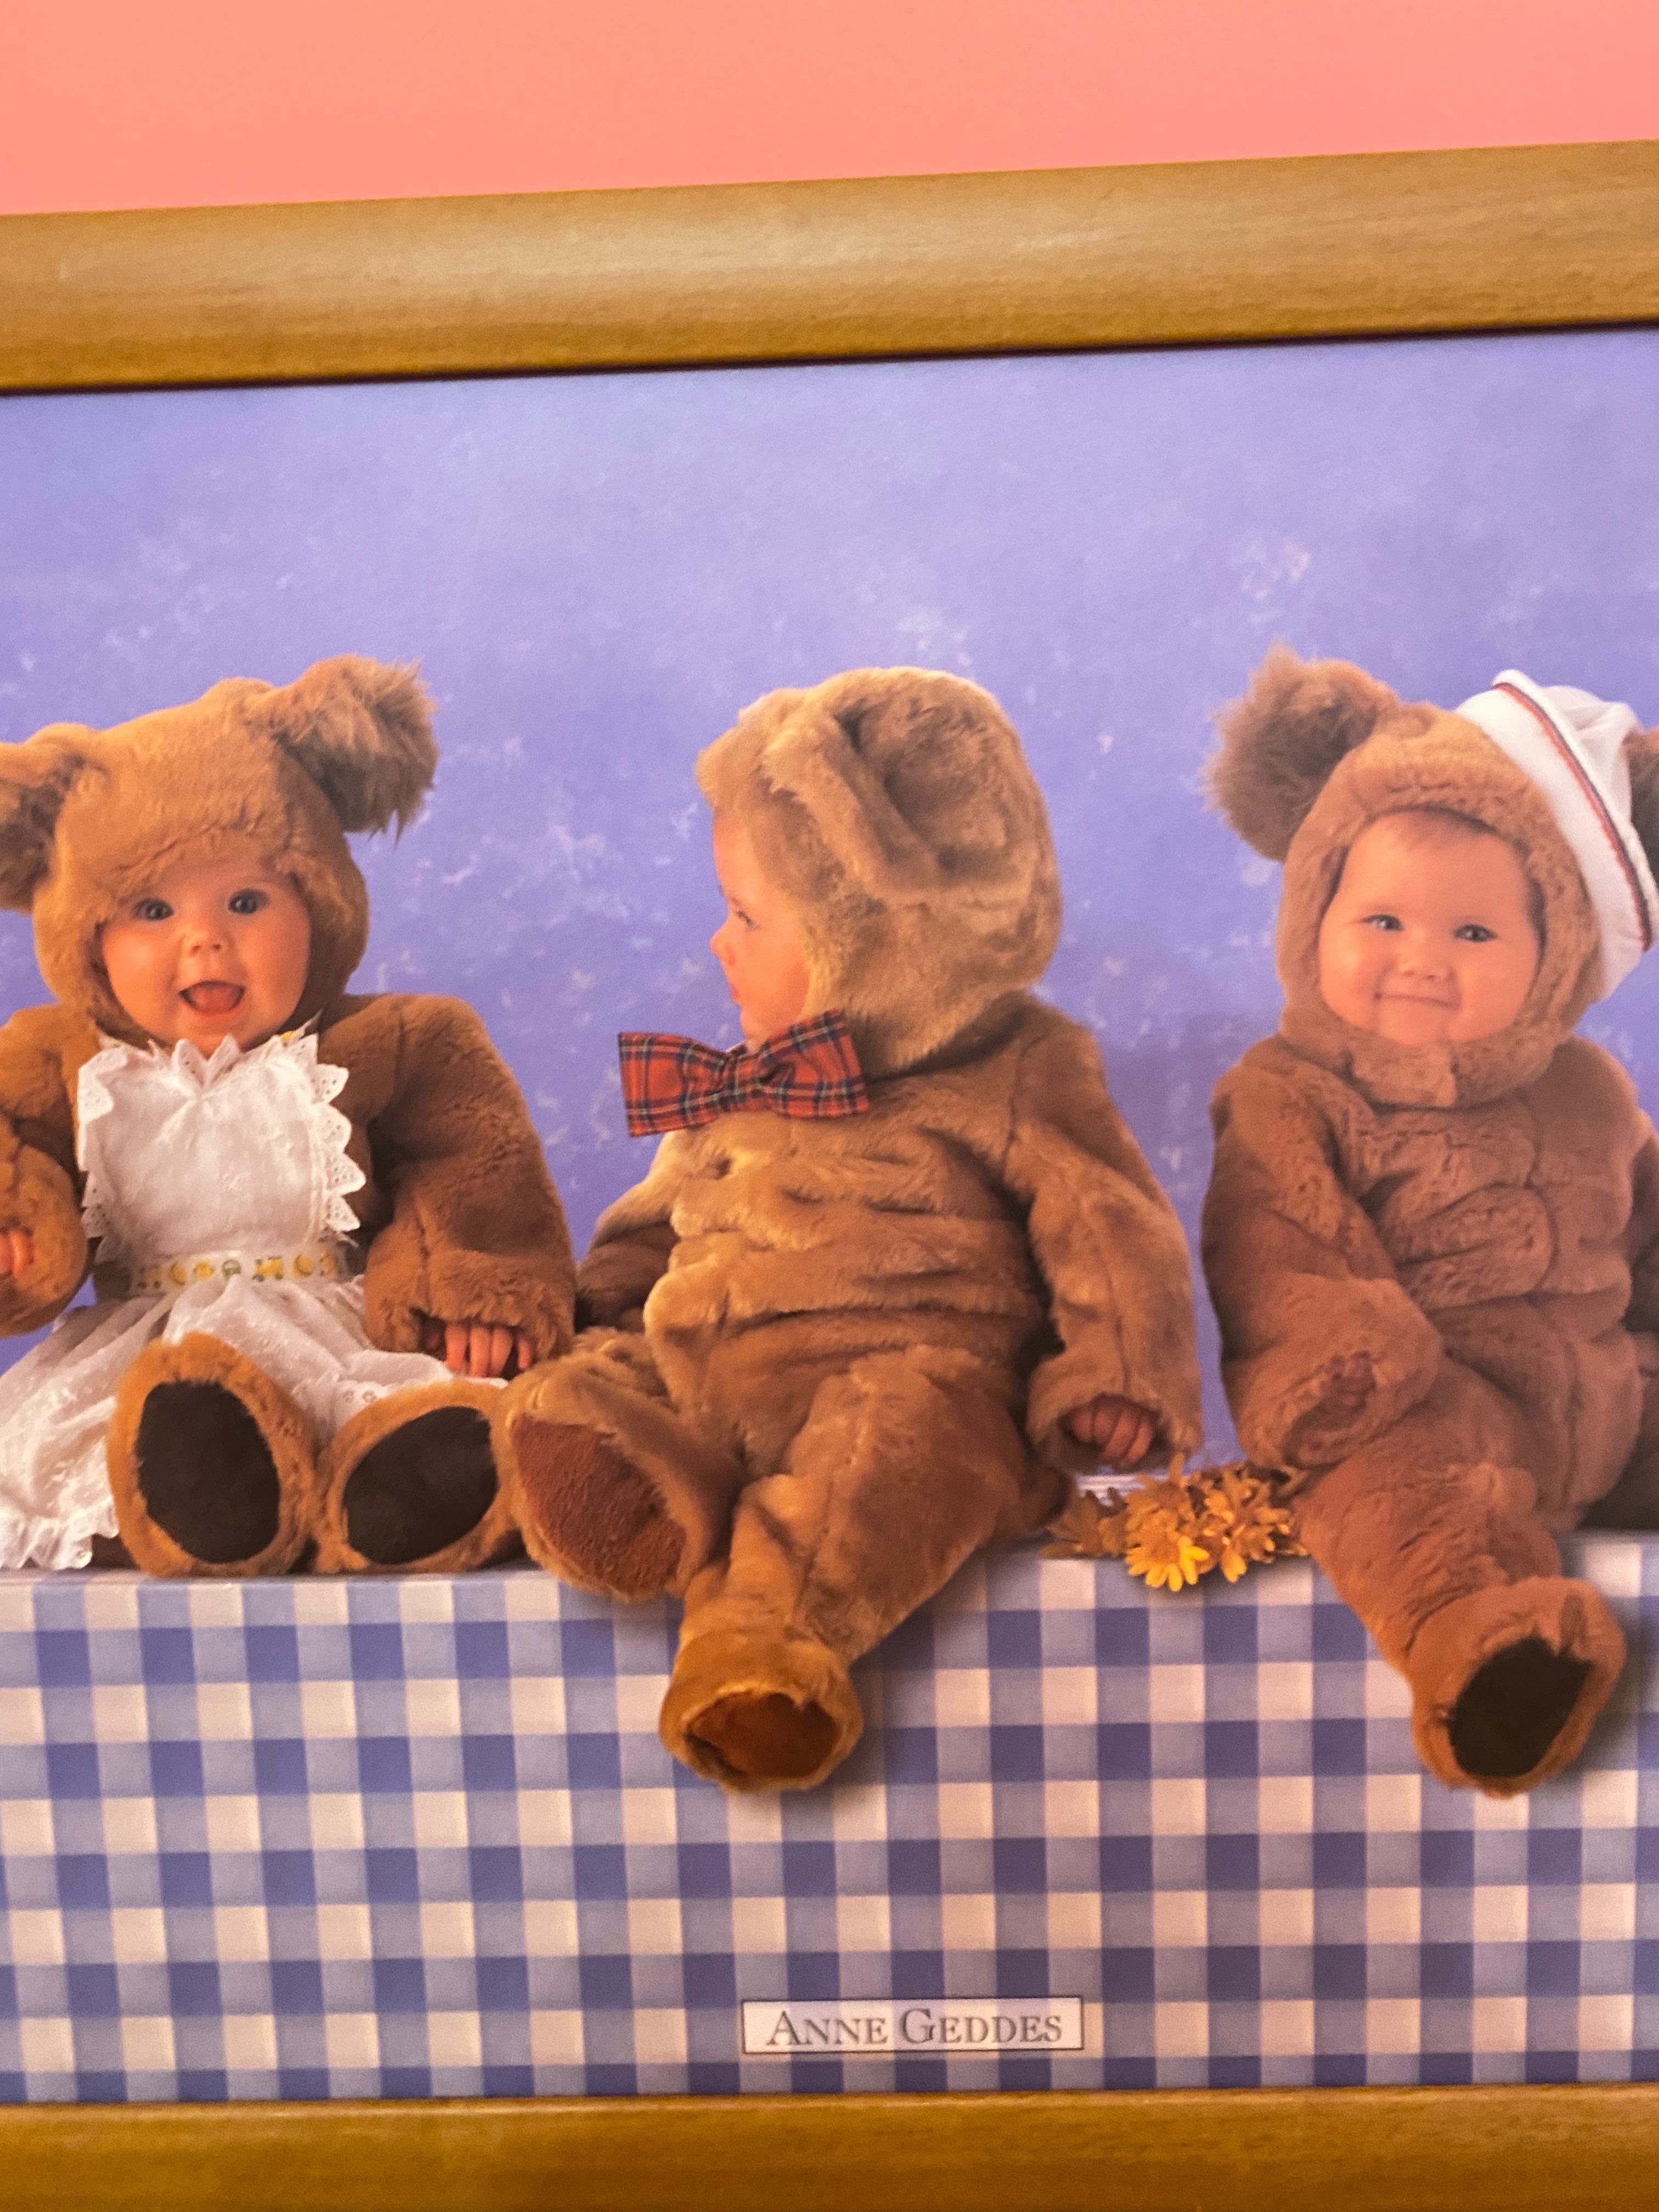 Картина в деревянной раме. Знаменитая детская серия Anne Geddes